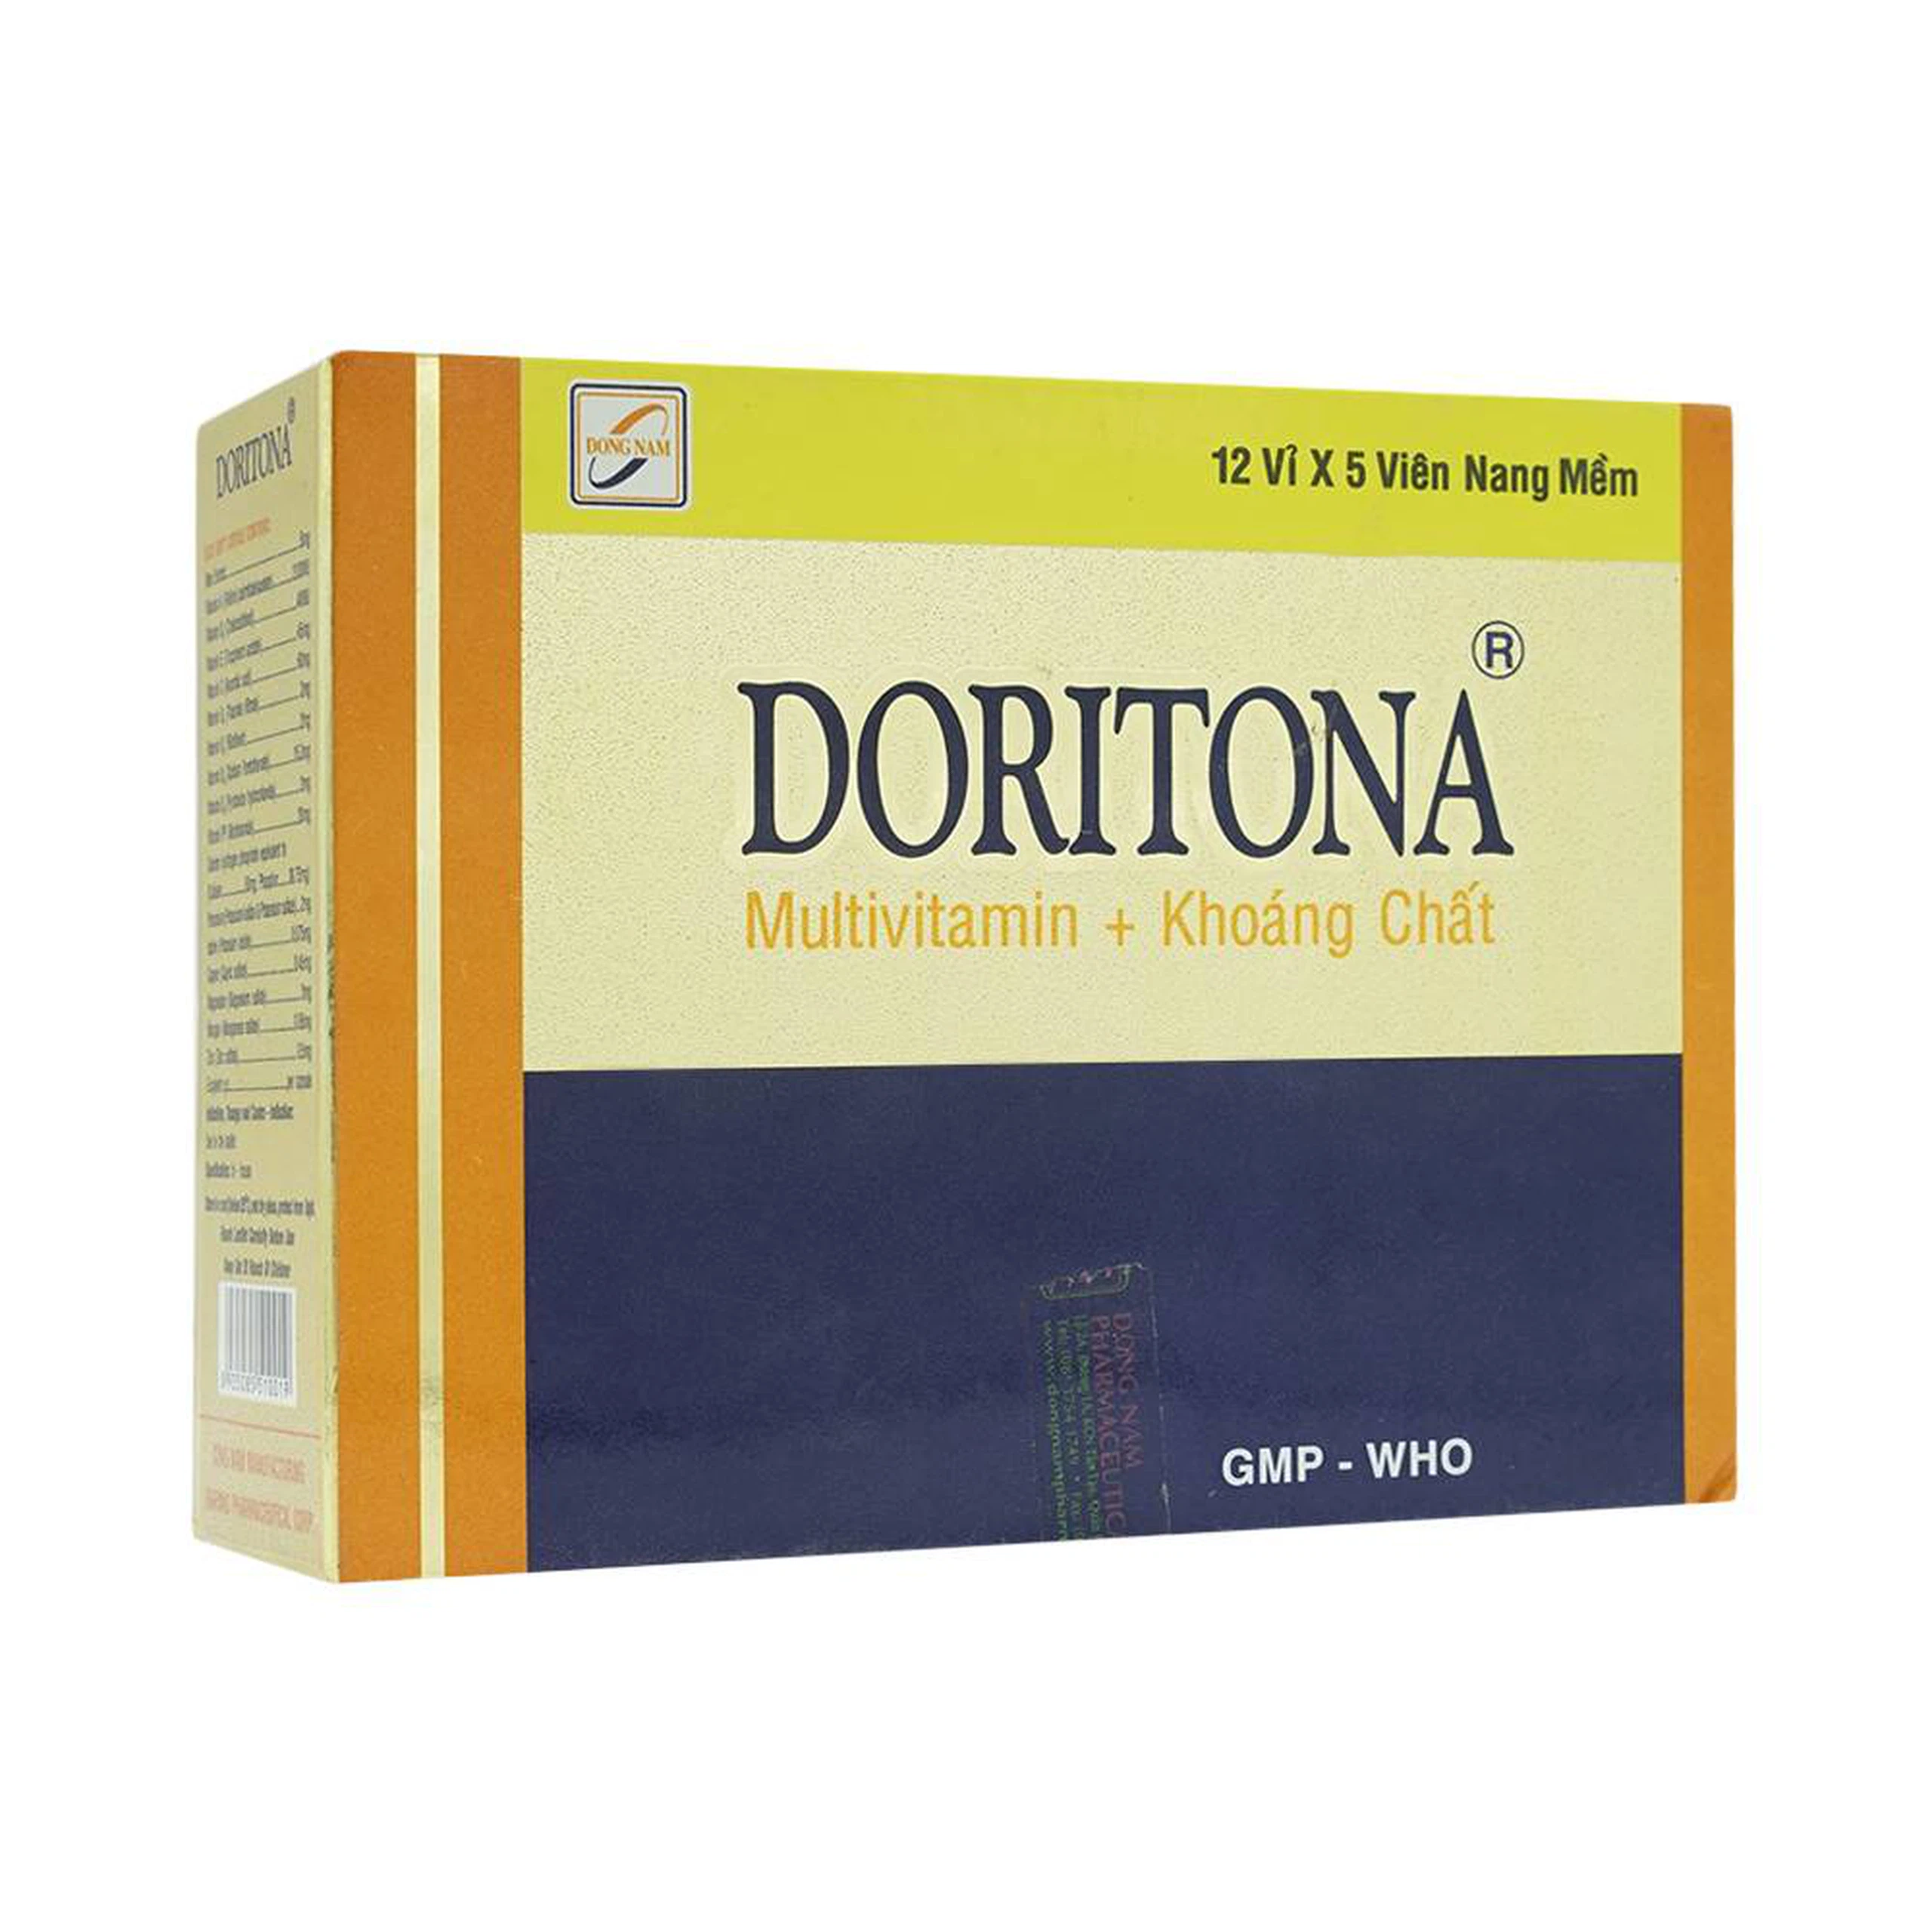 Thuốc Doritona Đông Nam bổ sung multivitamin và khoáng chất (12 vỉ x 5 viên)